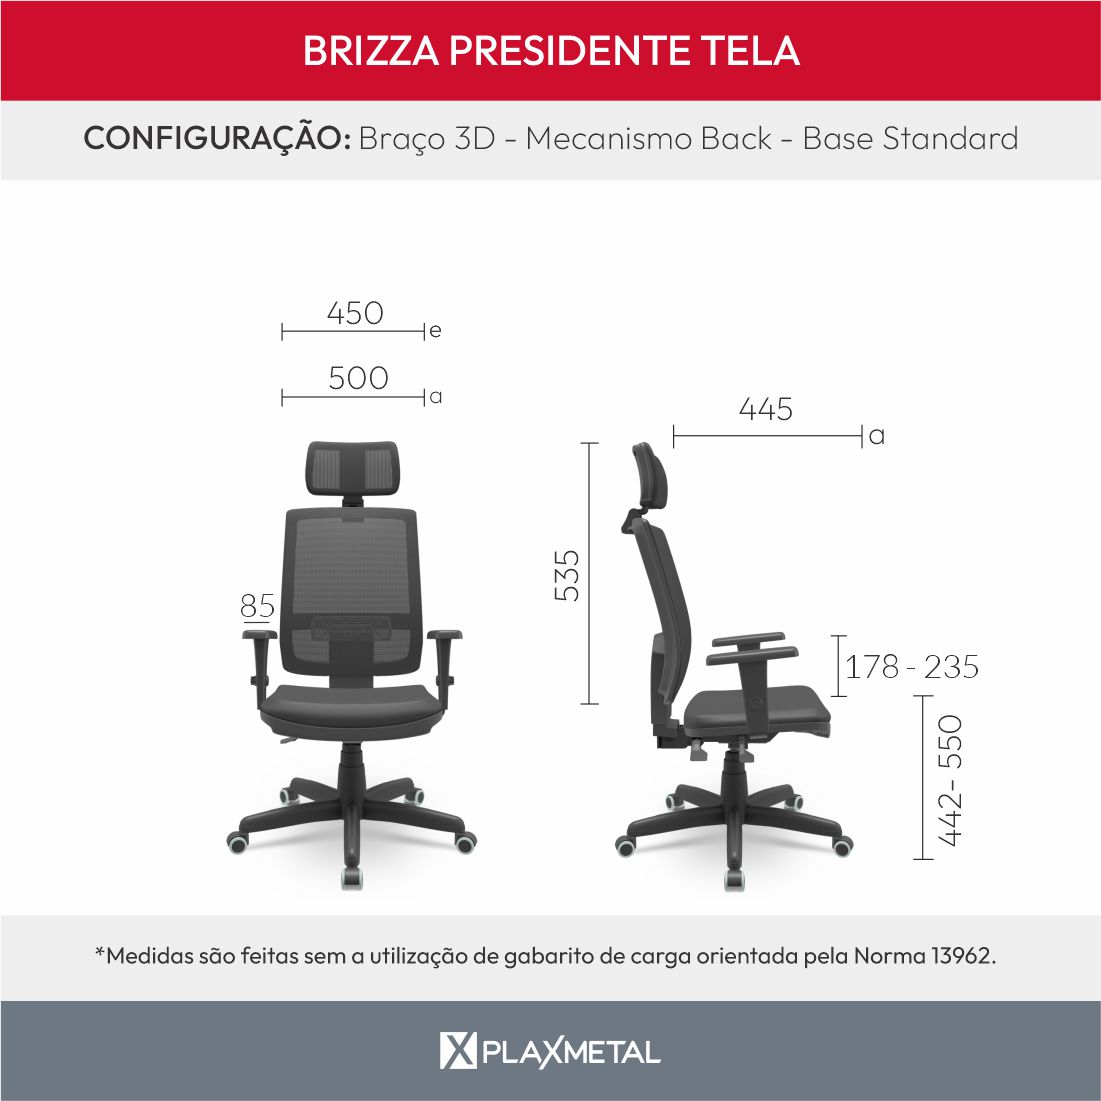 Dimensões Brizza Presidente Brizza Presidente Tela